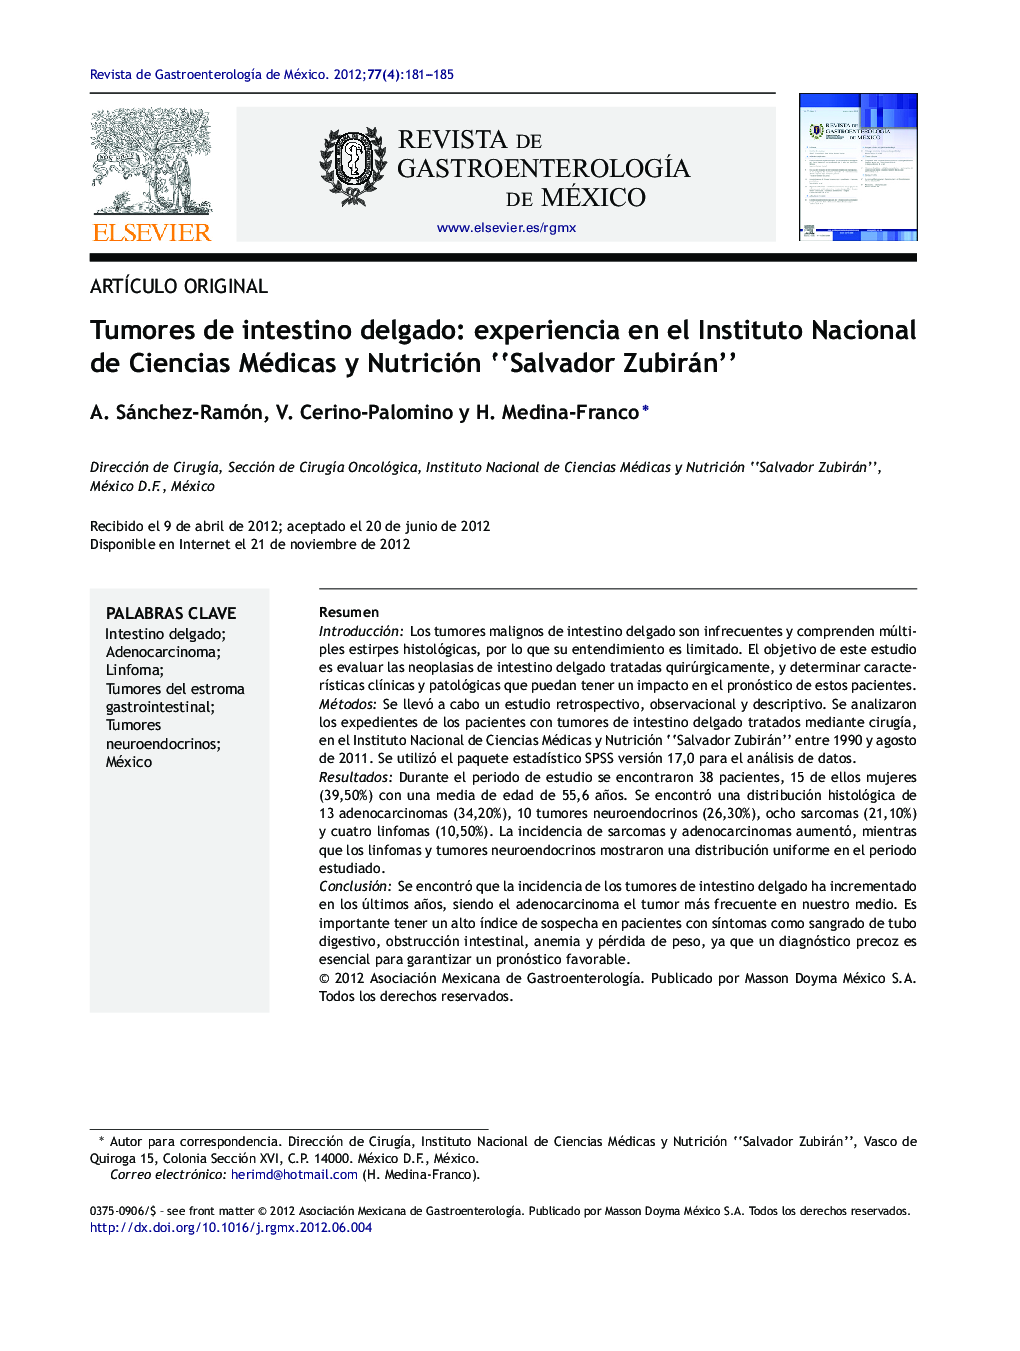 Tumores de intestino delgado: experiencia en el Instituto Nacional de Ciencias Médicas y Nutrición “Salvador Zubirán”